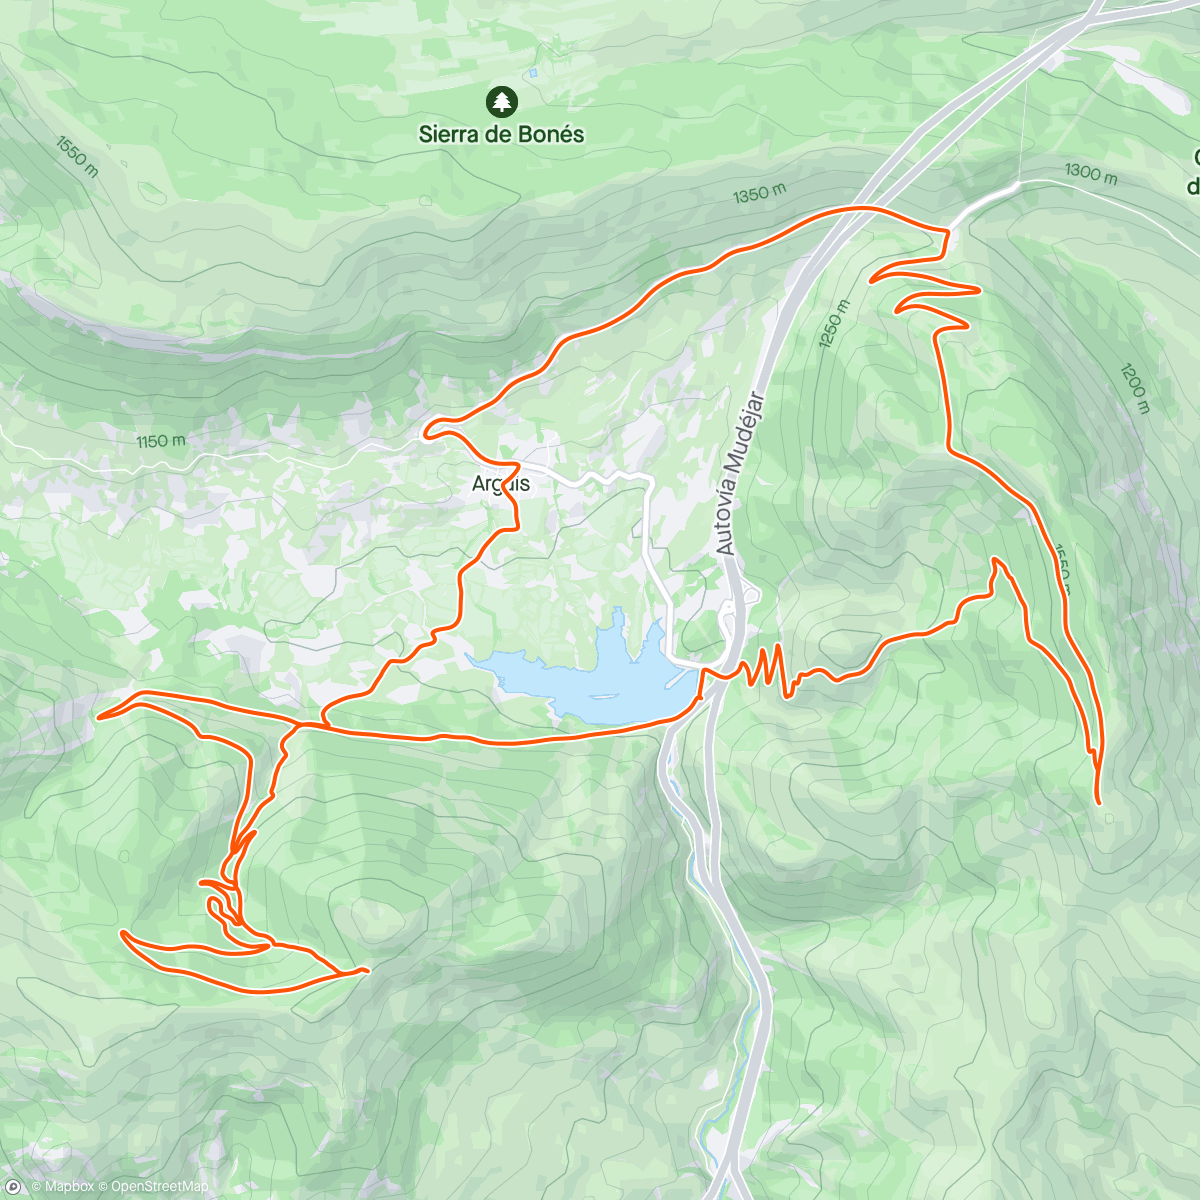 「Arguis: Las calmas clásica y Pico del Águila」活動的地圖